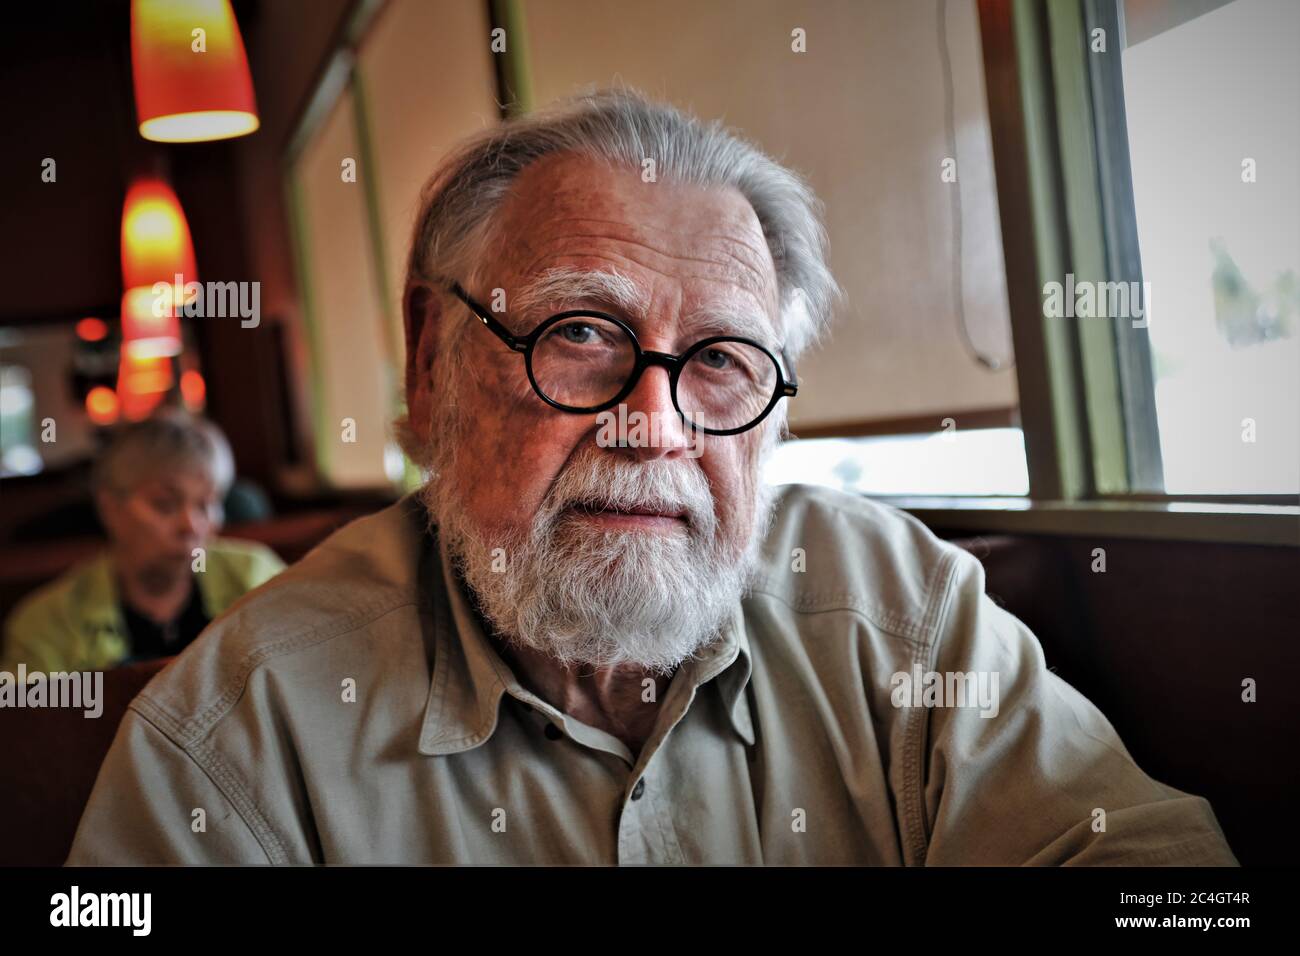 anciano mayor con gafas una barba y preguntas mira al fotógrafo en cara completa y pelo gris Foto de stock